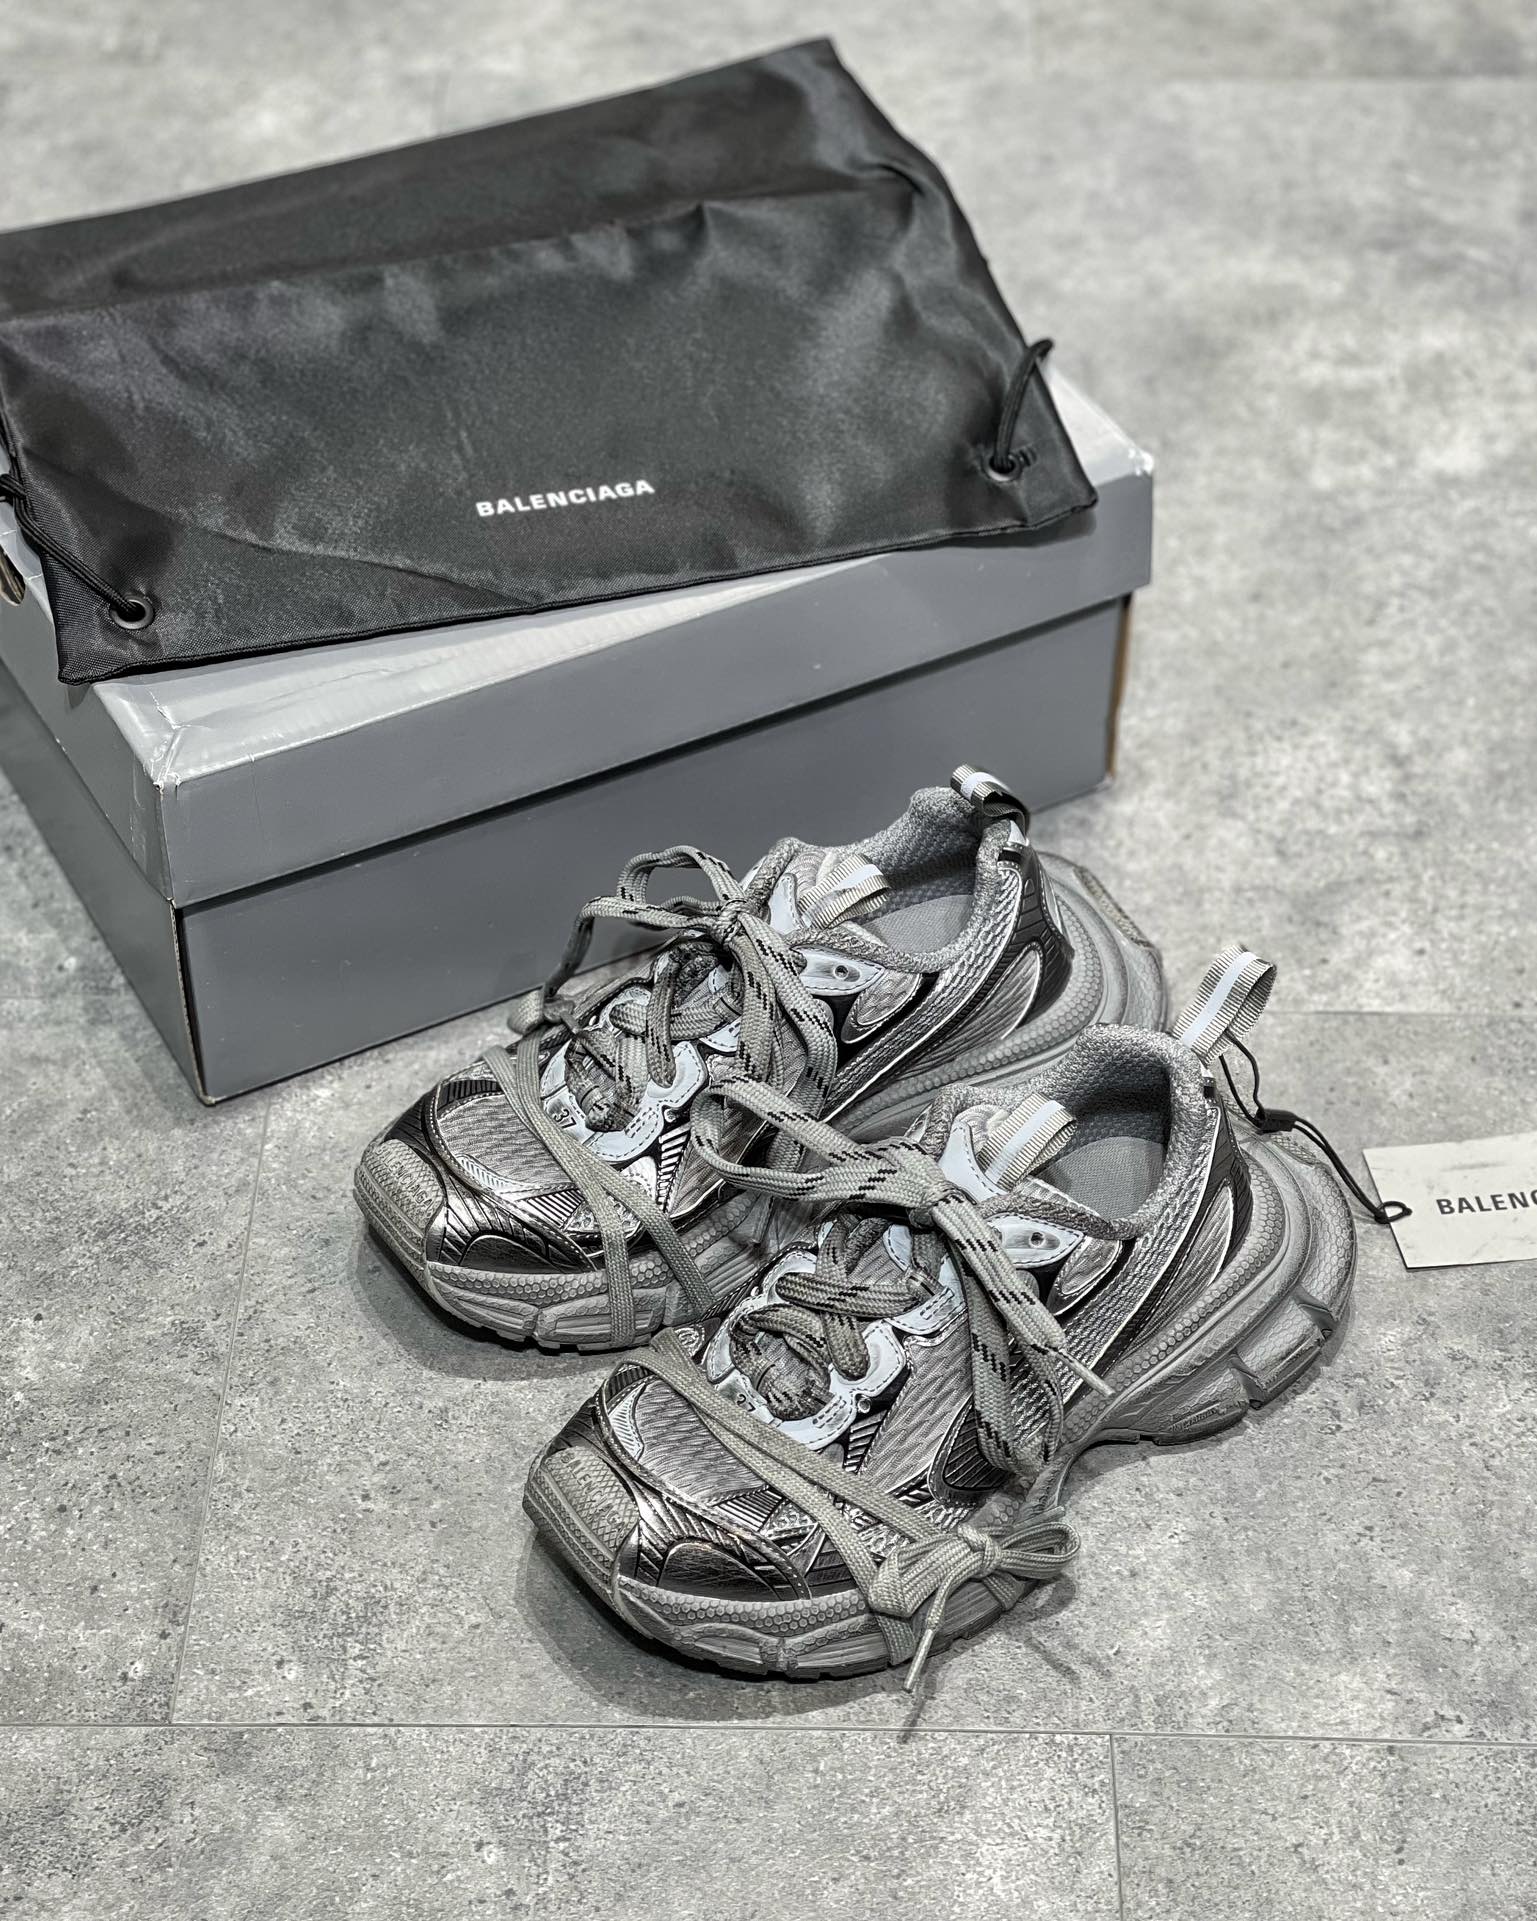 巴黎世家Balenciaga 3XL  今年最火鞋款之一  在此之前已经出了很多配色 新色持续更新 Balenciaga 3XL Sneaker系列 秀场正式曝光的3XL运动鞋 相信各位留下了深刻的印象 鞋款延续了近年来大火的“老爹鞋”鞋型，同时又通过特殊系带的方式，增加了时尚属性 Balenciaga正式释出了该系列的首波配色预览，颜色以银、黑、古铜色为主，点缀有红，蓝等细节 后续新色更新 有粉嫩百变配色陆续发售的 3XL 鞋型绝对是复古先锋新选择 后知后觉一旦接触面就会疯狂吃上 又非